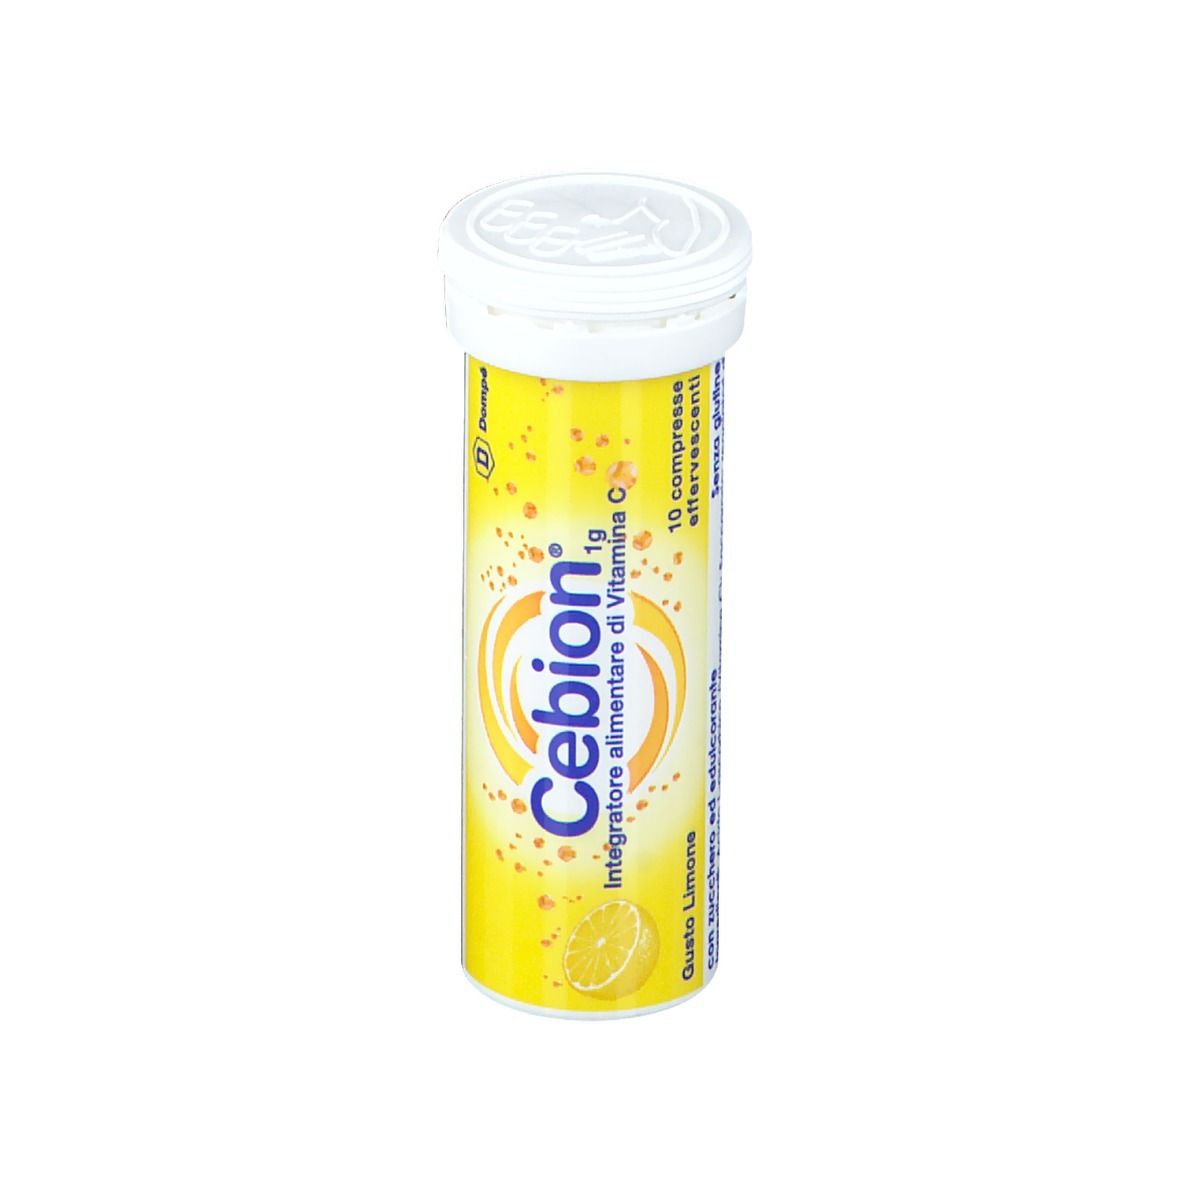 Bracco Cebion® Compresse Effervescenti Gusto Limone